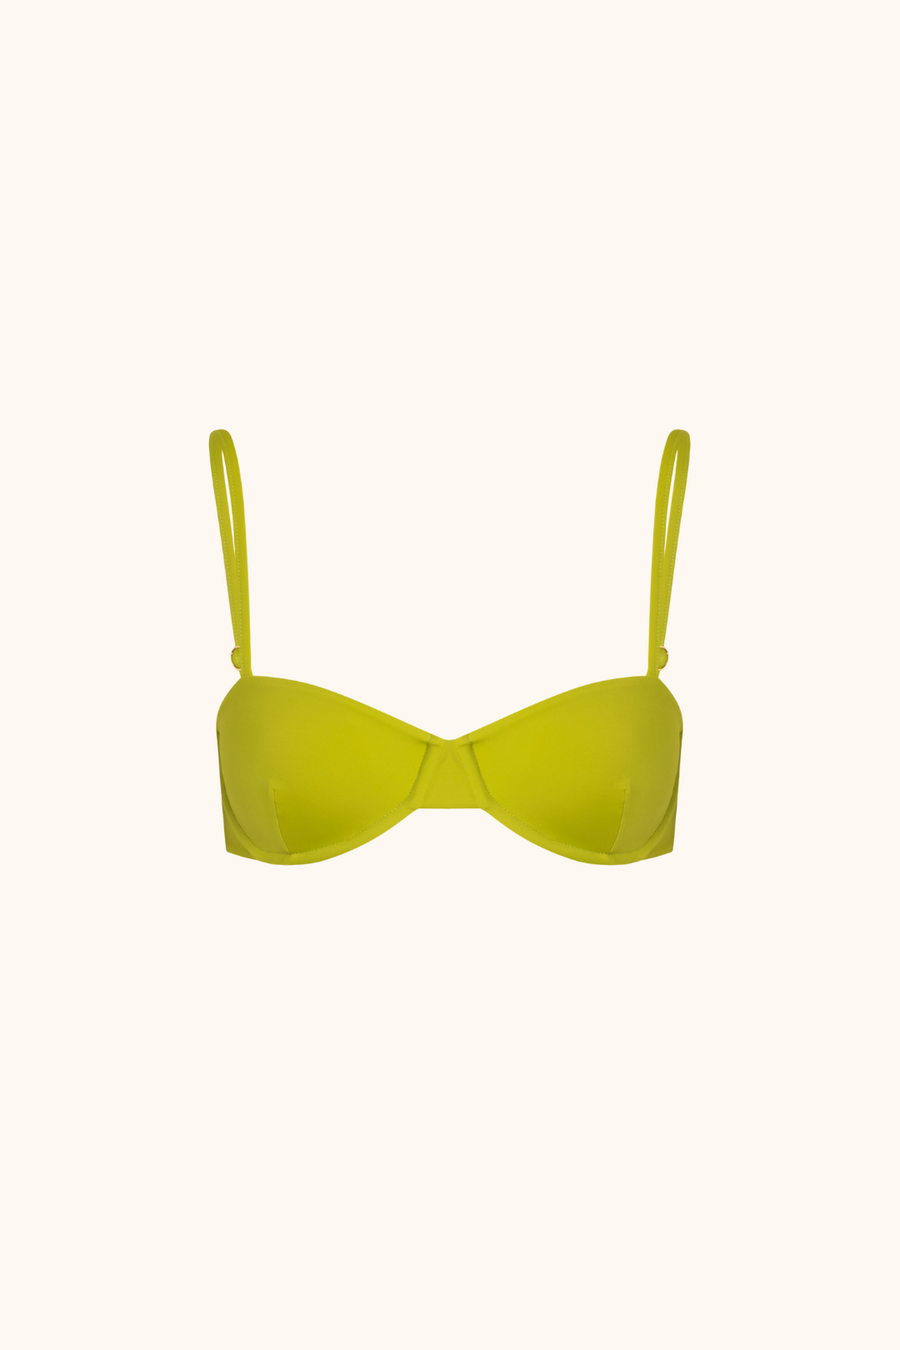 'Yellow Lime' Bikini Top